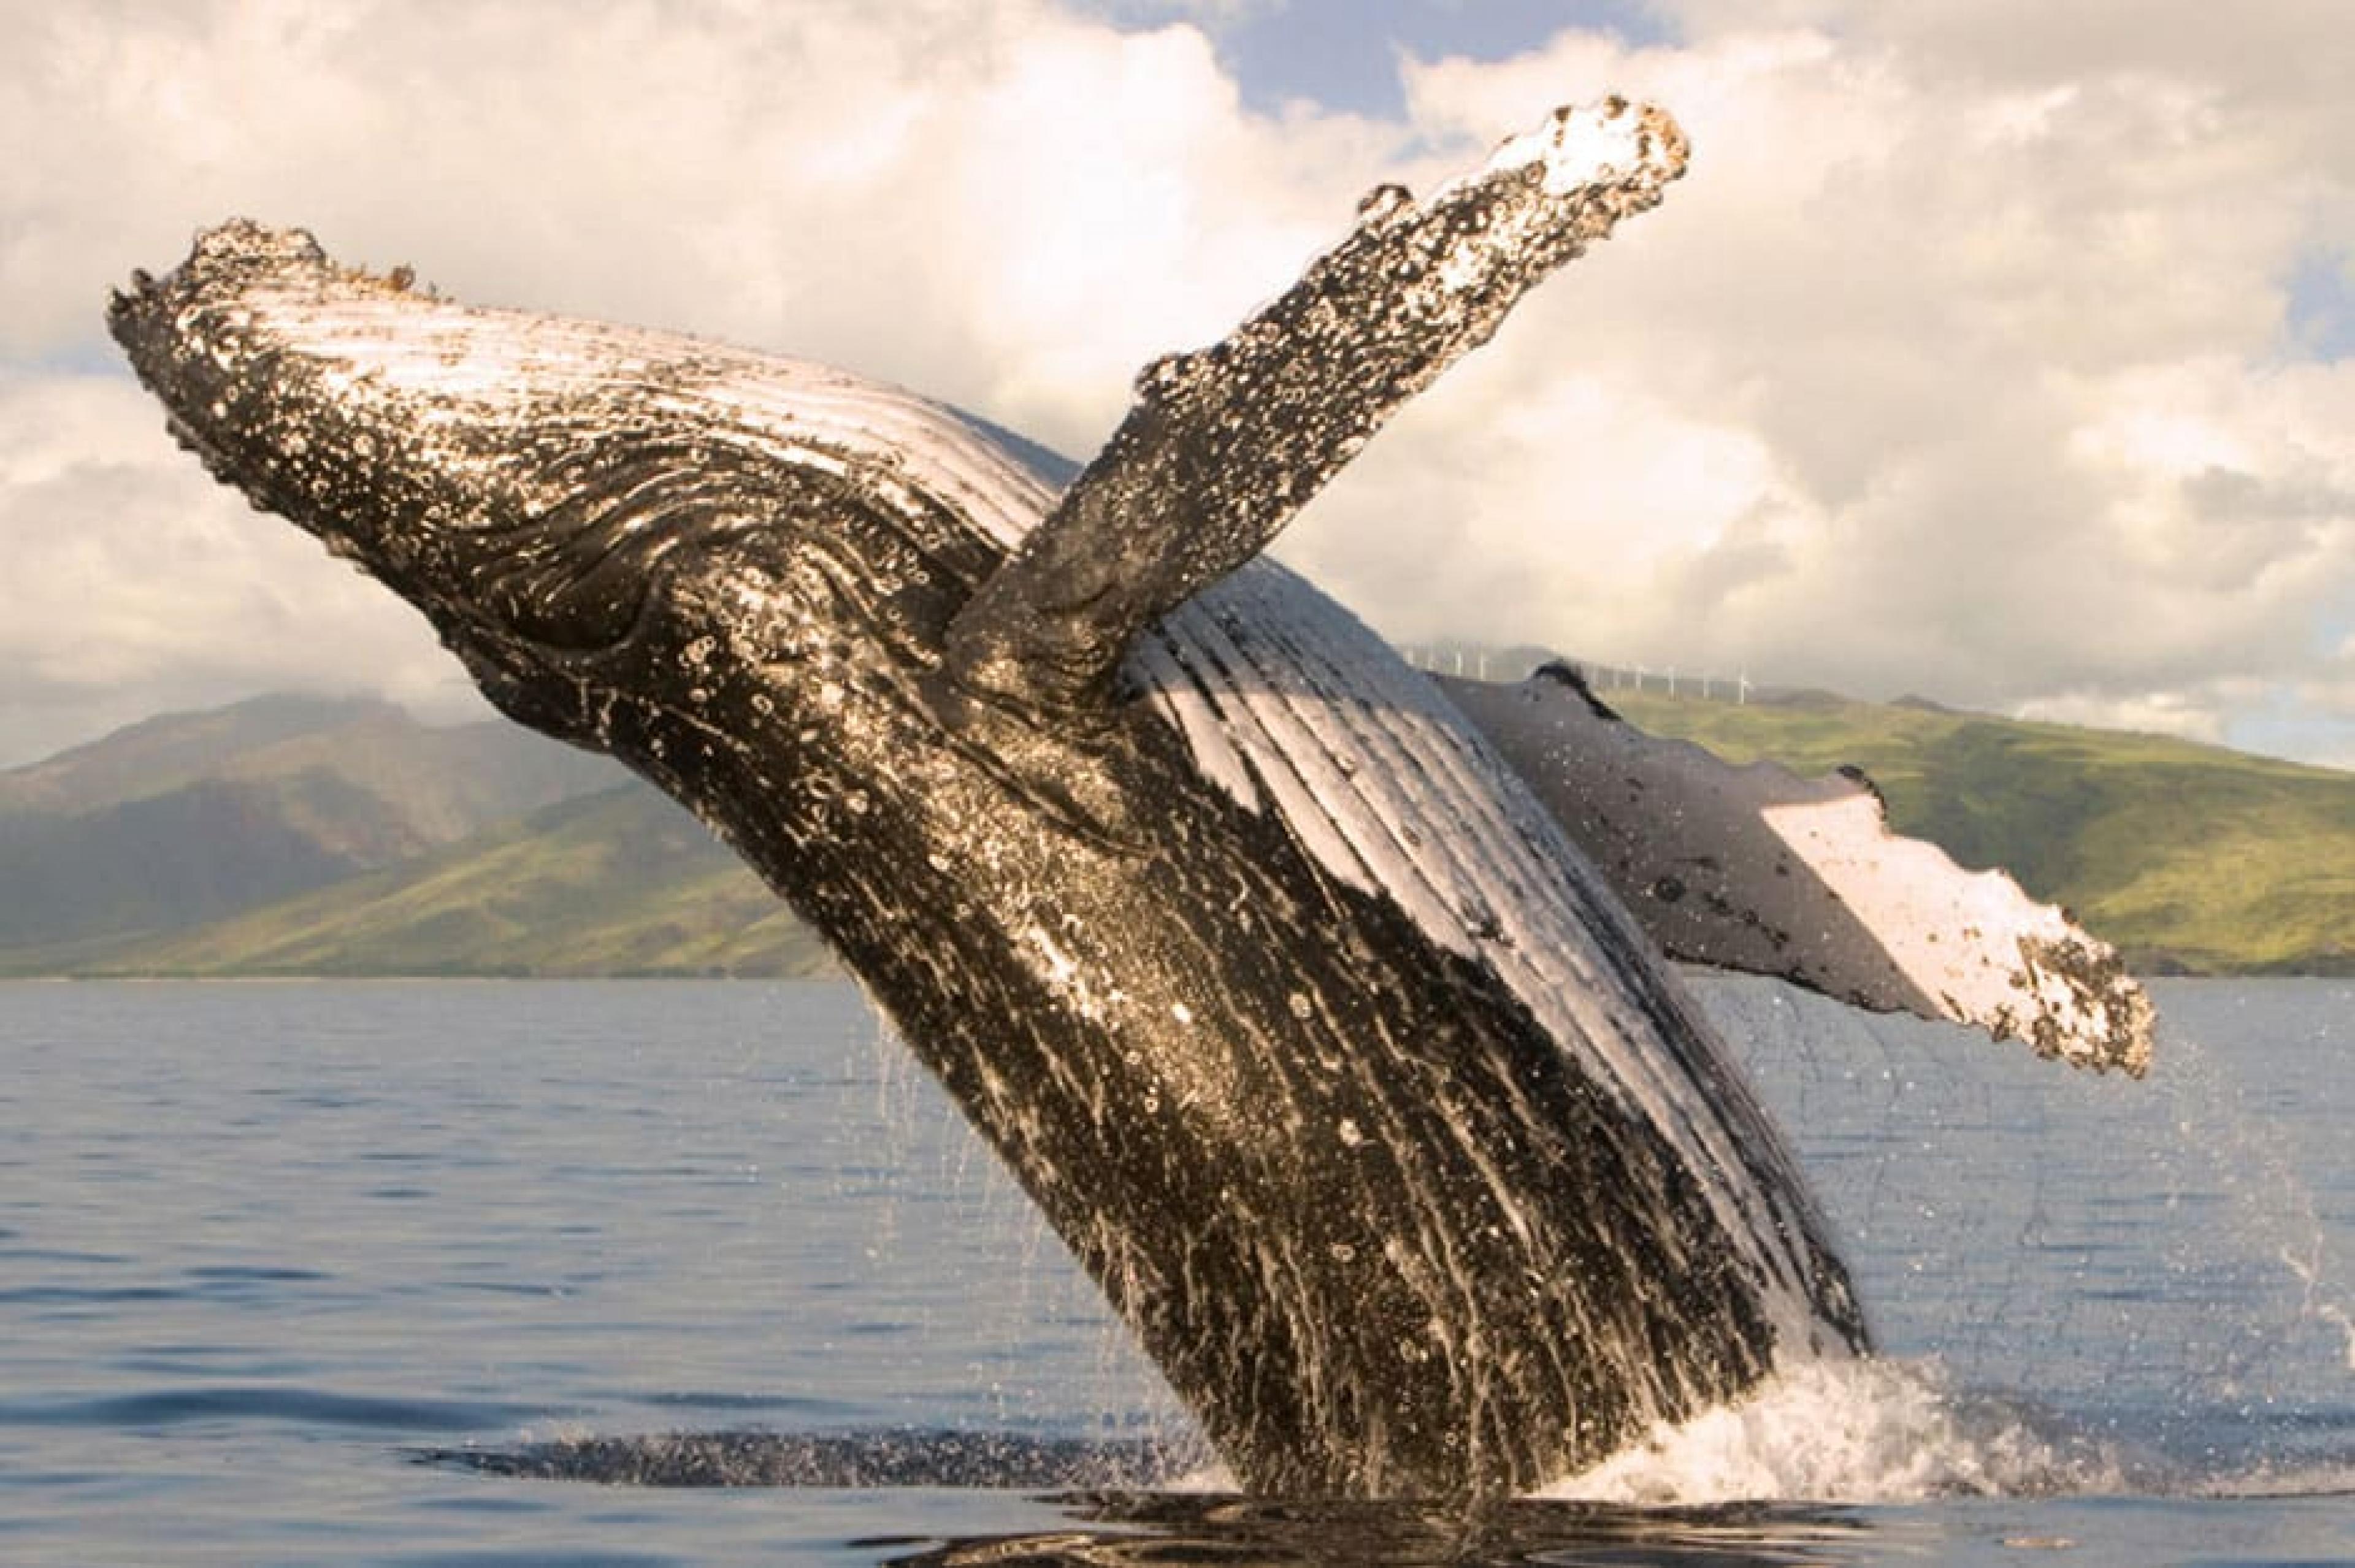 Whale - Whale Watching, Hawaii: Maui, Hawaii - Courtesy Four Seasons Maui